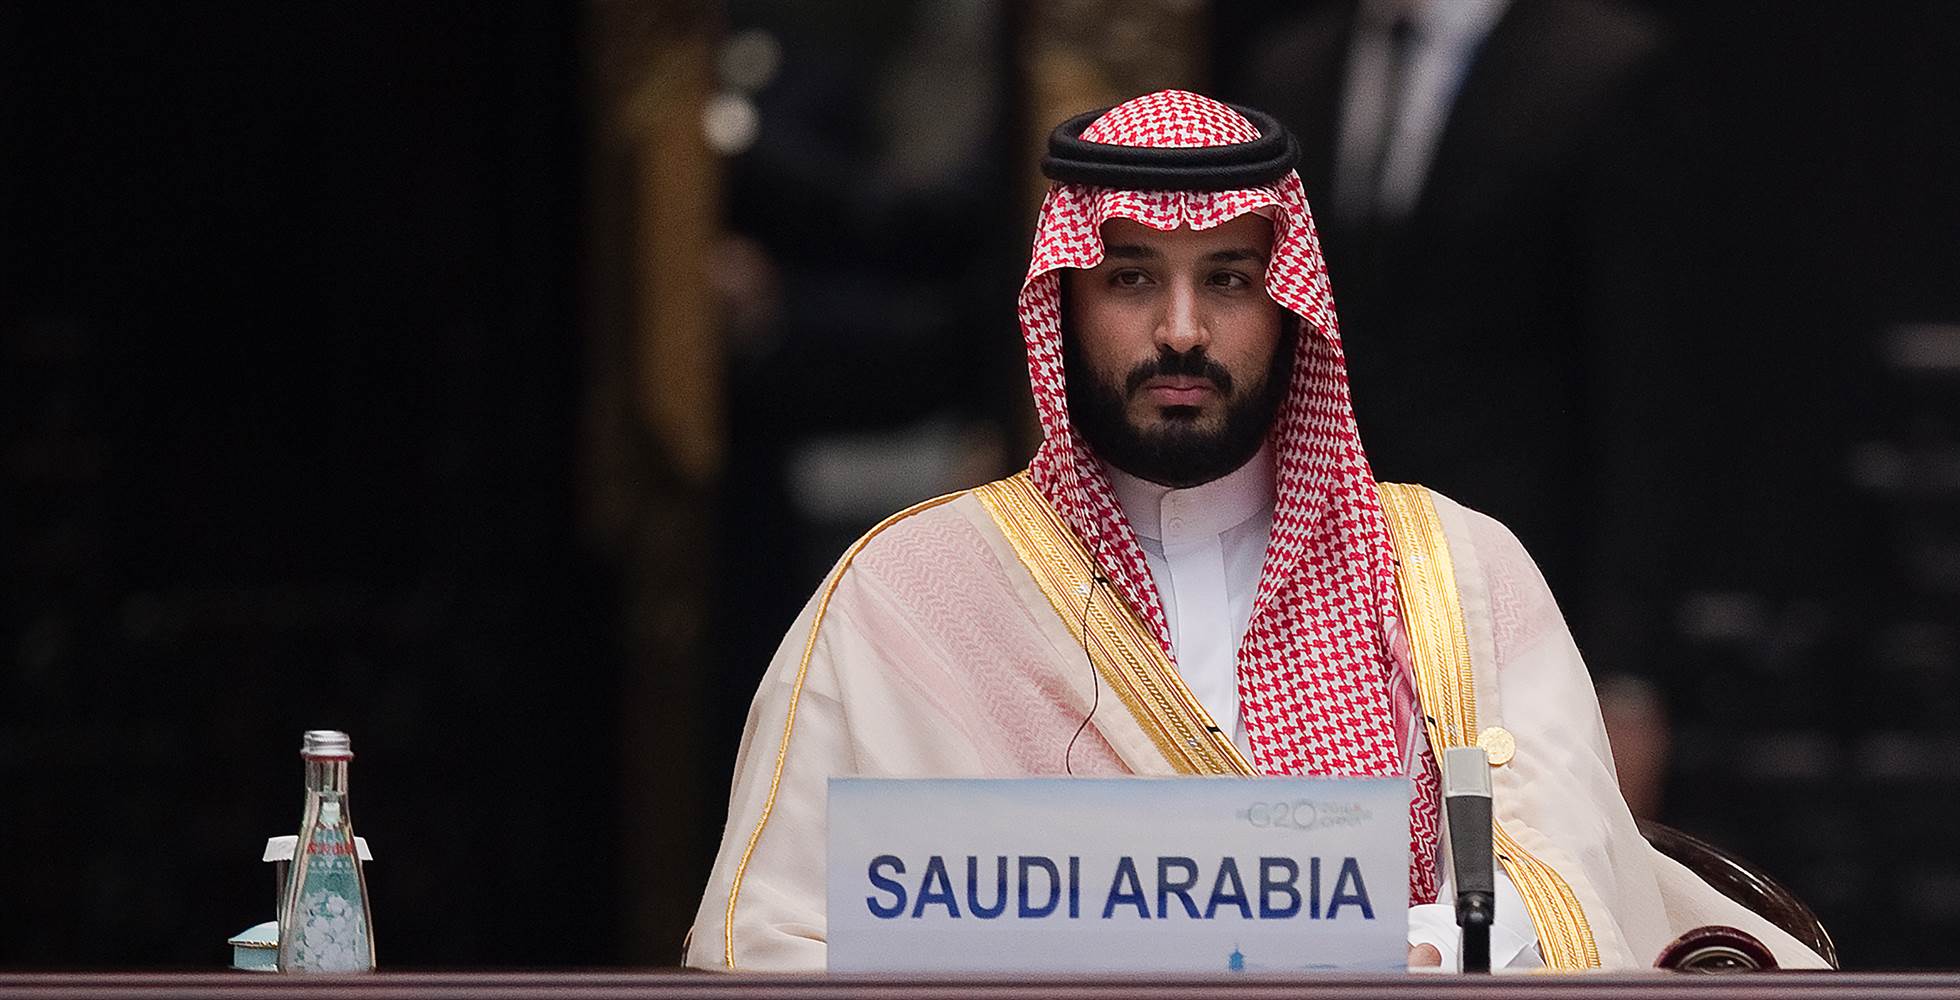 Η Σ.Αραβία αλλάζει πρόσωπο –  Ο πρίγκιπας Mohammed ben Salmane… εκκαθάρισε κάθε αντίπαλη πολιτική φατρία (φωτό)